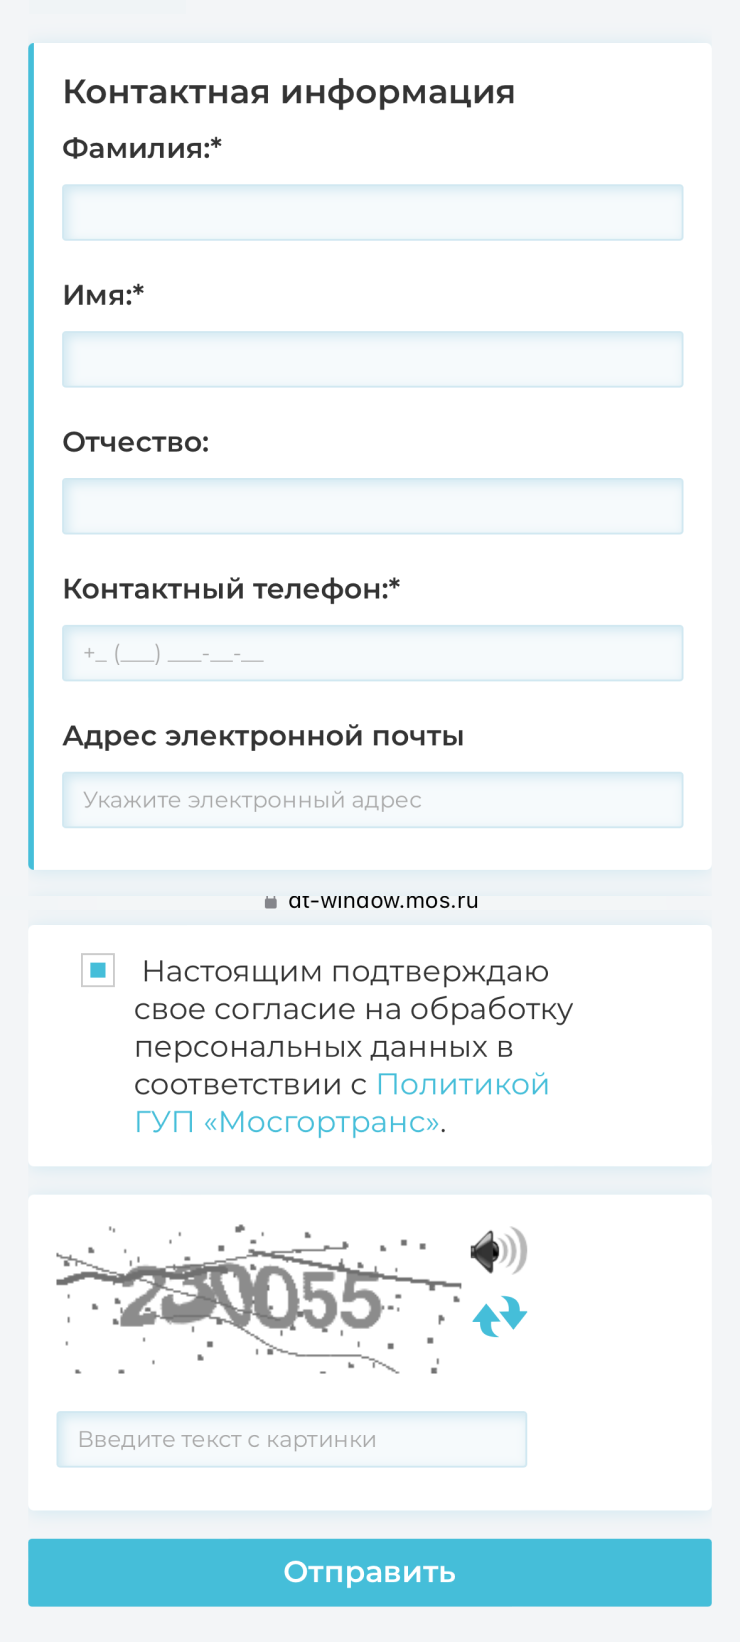 Зарегистрироваться в реестре получателей услуги социального такси можно в МФЦ, а в некоторых городах и онлайн. Например, в Москве это можно сделать через портал mos.ru